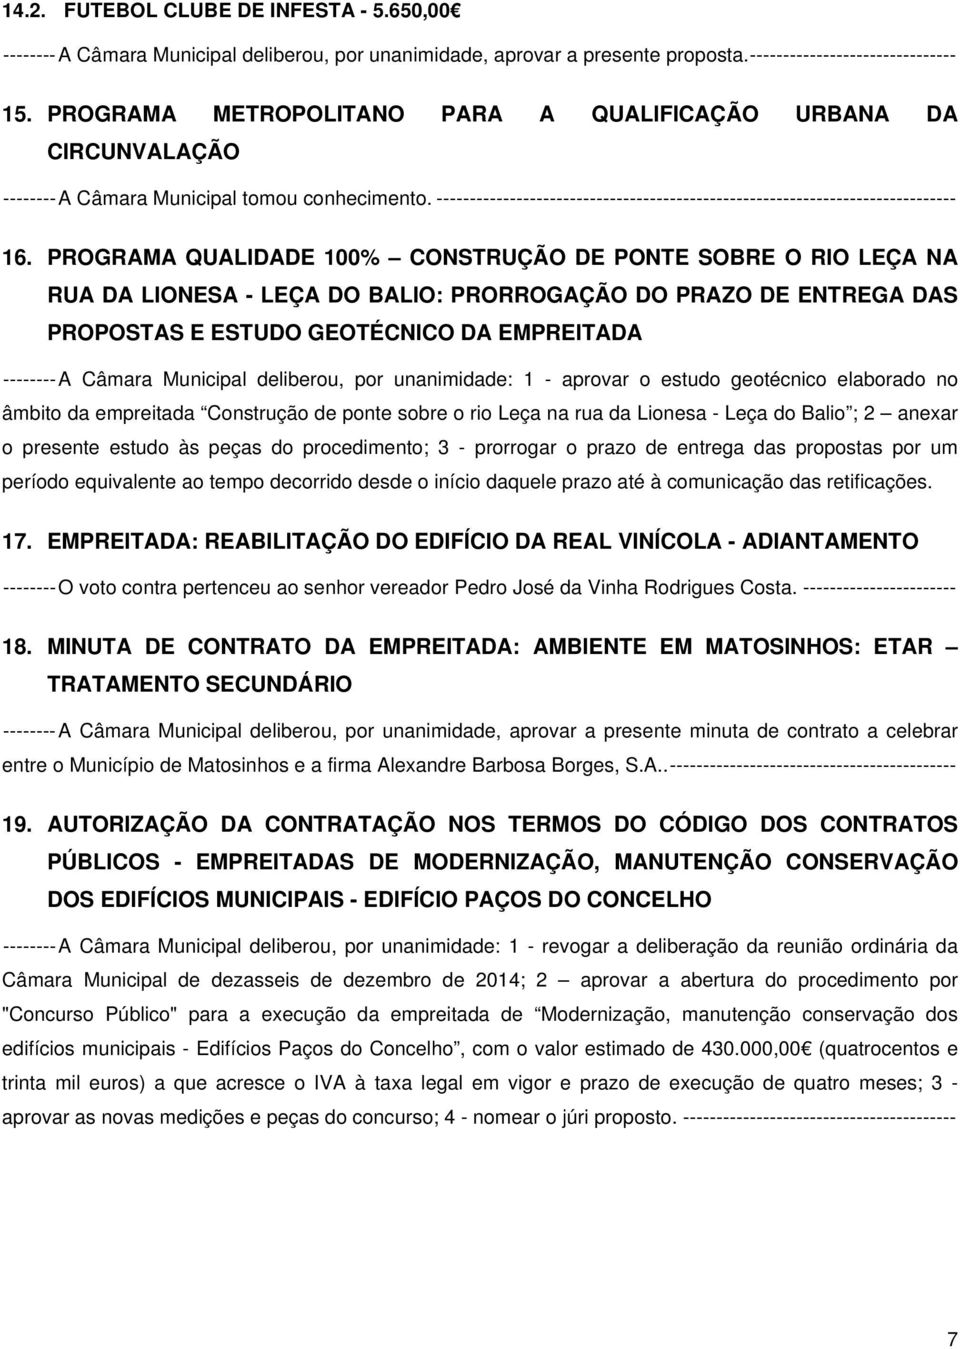 PROGRAMA QUALIDADE 100% CONSTRUÇÃO DE PONTE SOBRE O RIO LEÇA NA RUA DA LIONESA - LEÇA DO BALIO: PRORROGAÇÃO DO PRAZO DE ENTREGA DAS PROPOSTAS E ESTUDO GEOTÉCNICO DA EMPREITADA -------- A Câmara